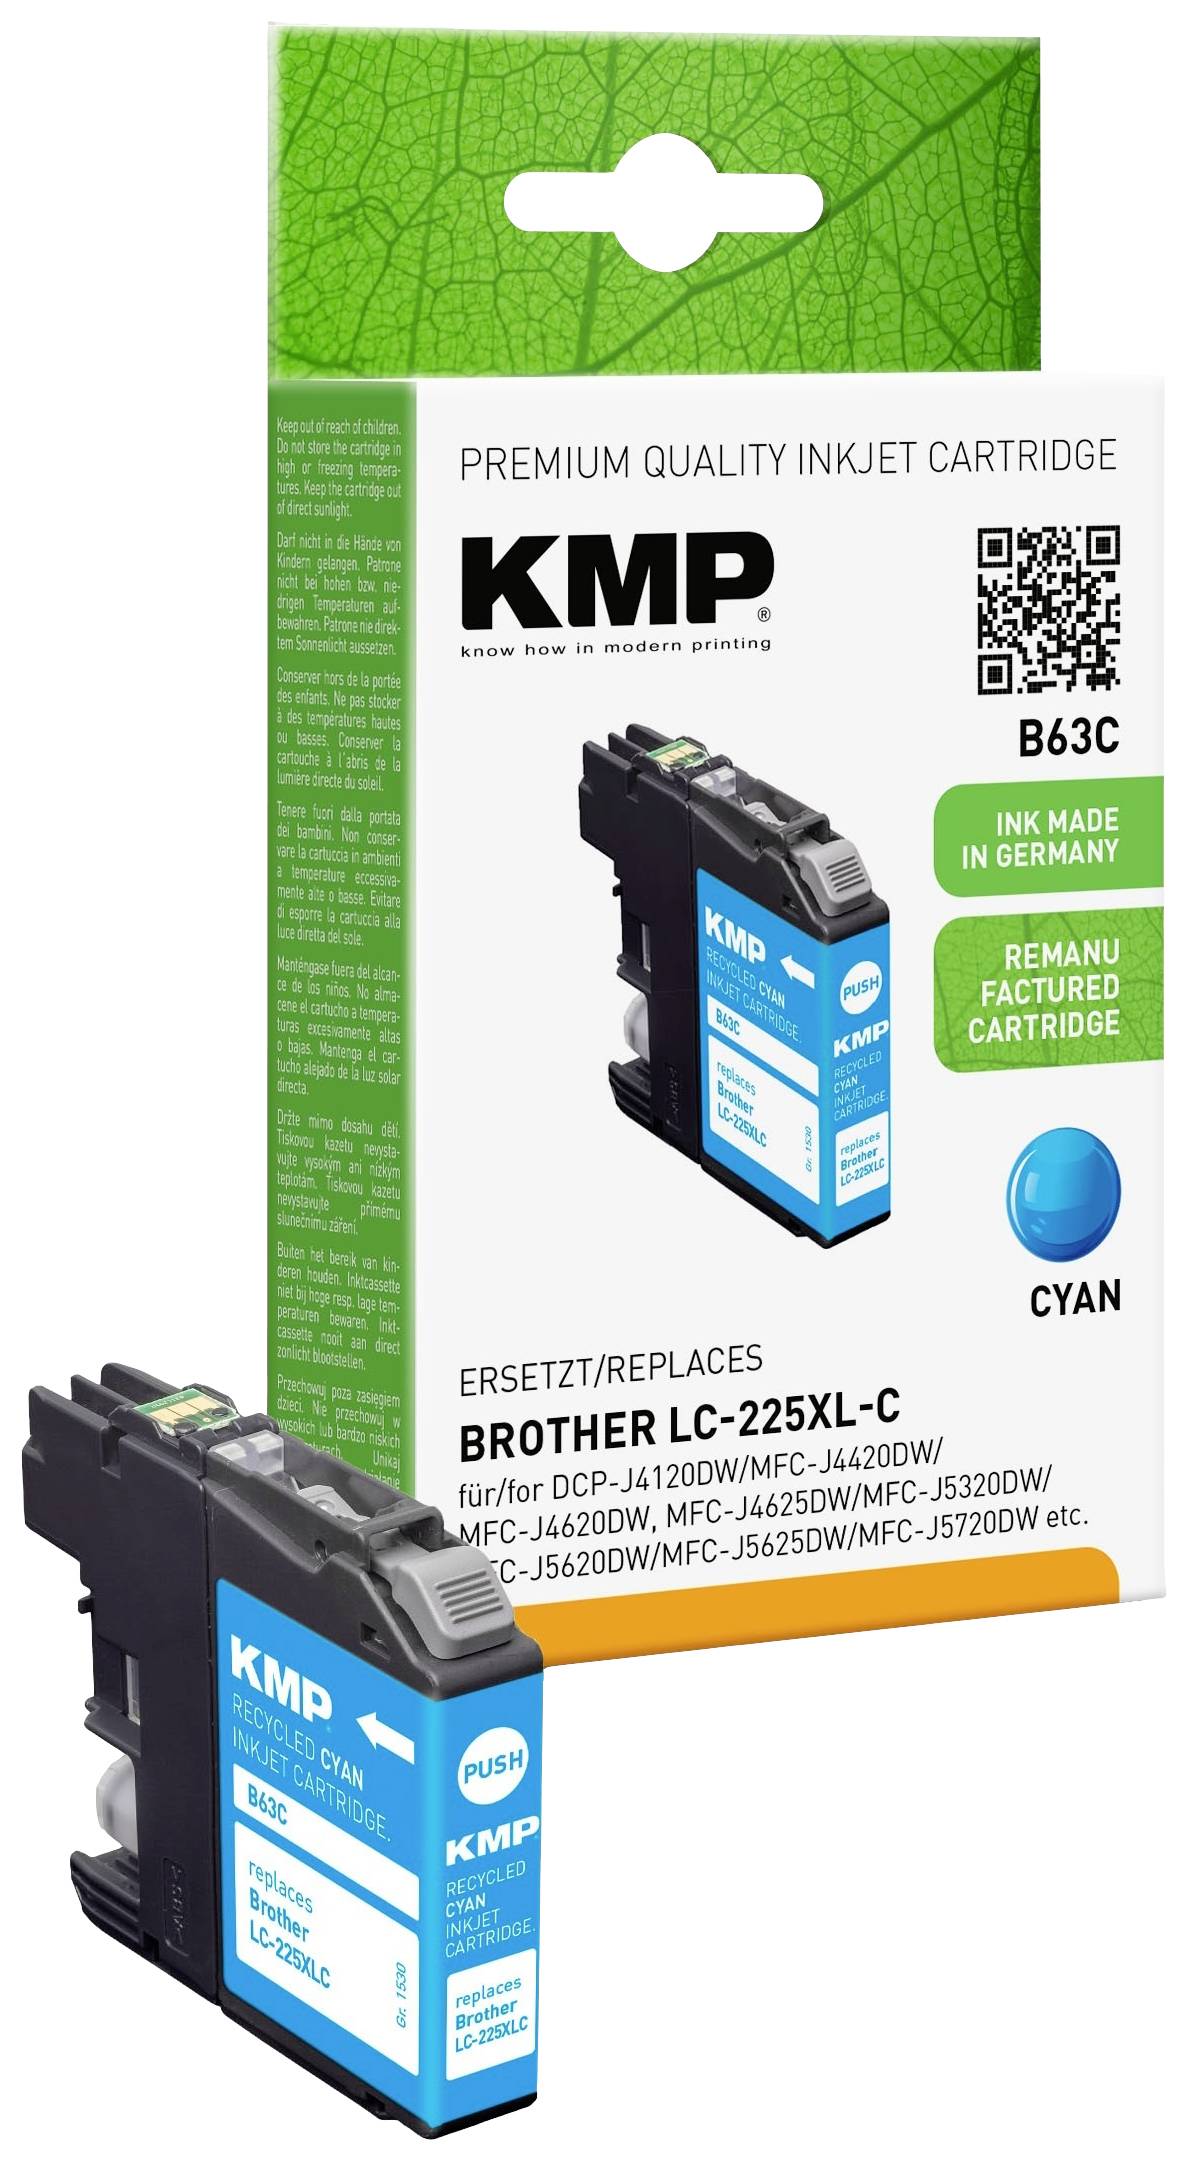 KMP Brother DCP-J4120DW/MFC-J4420DW/MFC-J4620DW, MFC-J4625DW/MFC-J5320DW/MFC-J5620DW/MFC-J5625DW/MFC